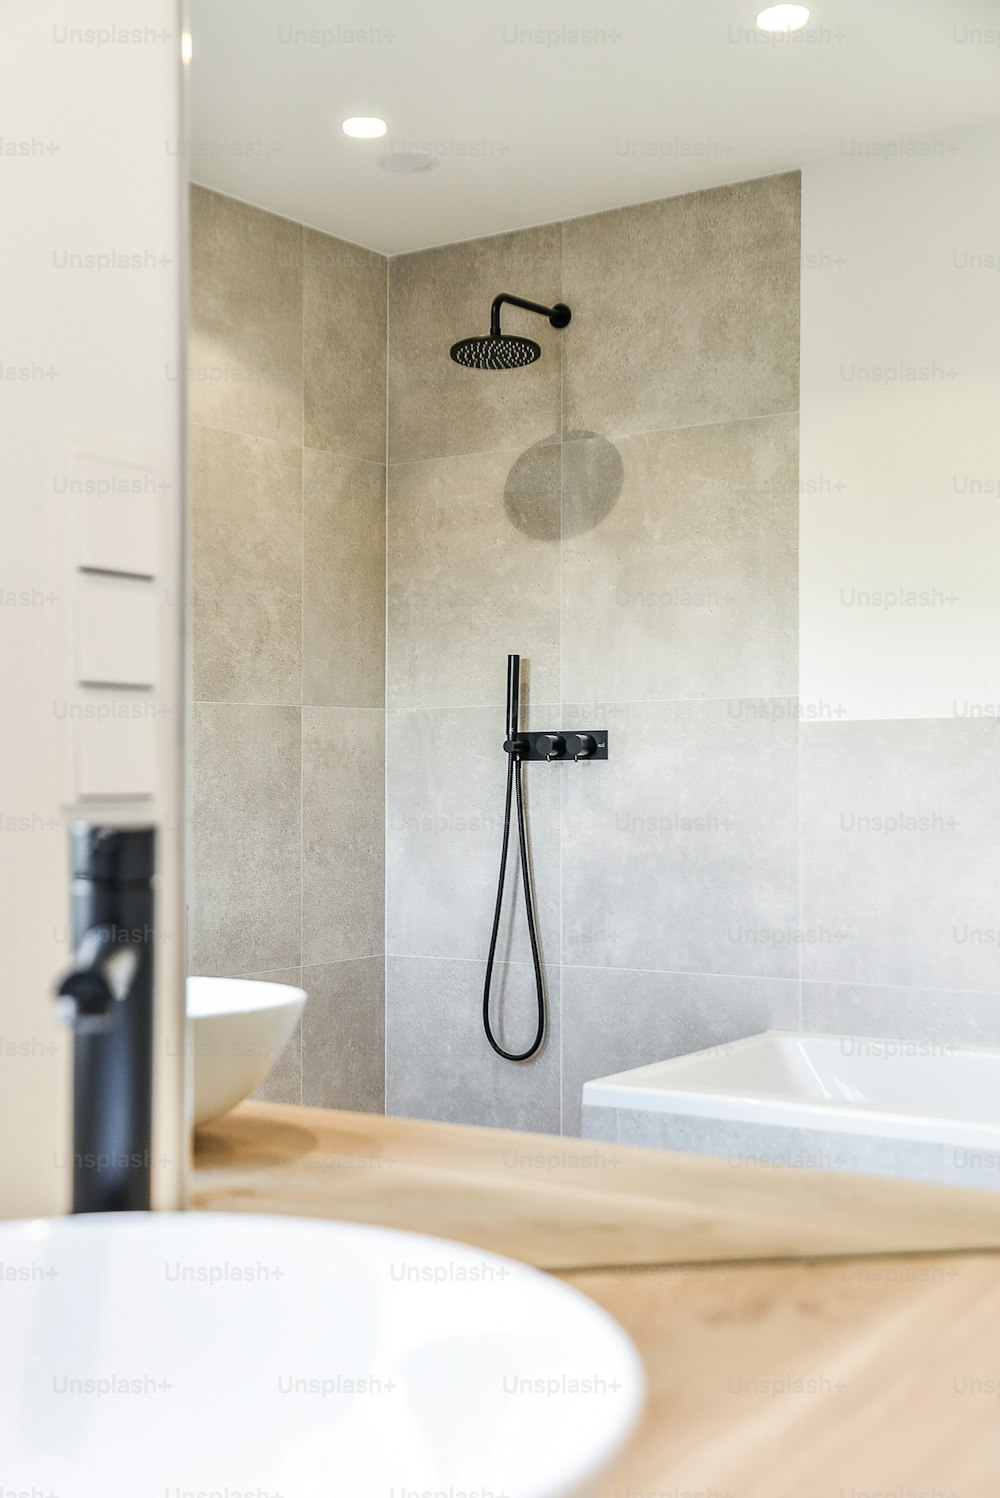 Belle salle de bain avec douche de luxe au design élégant